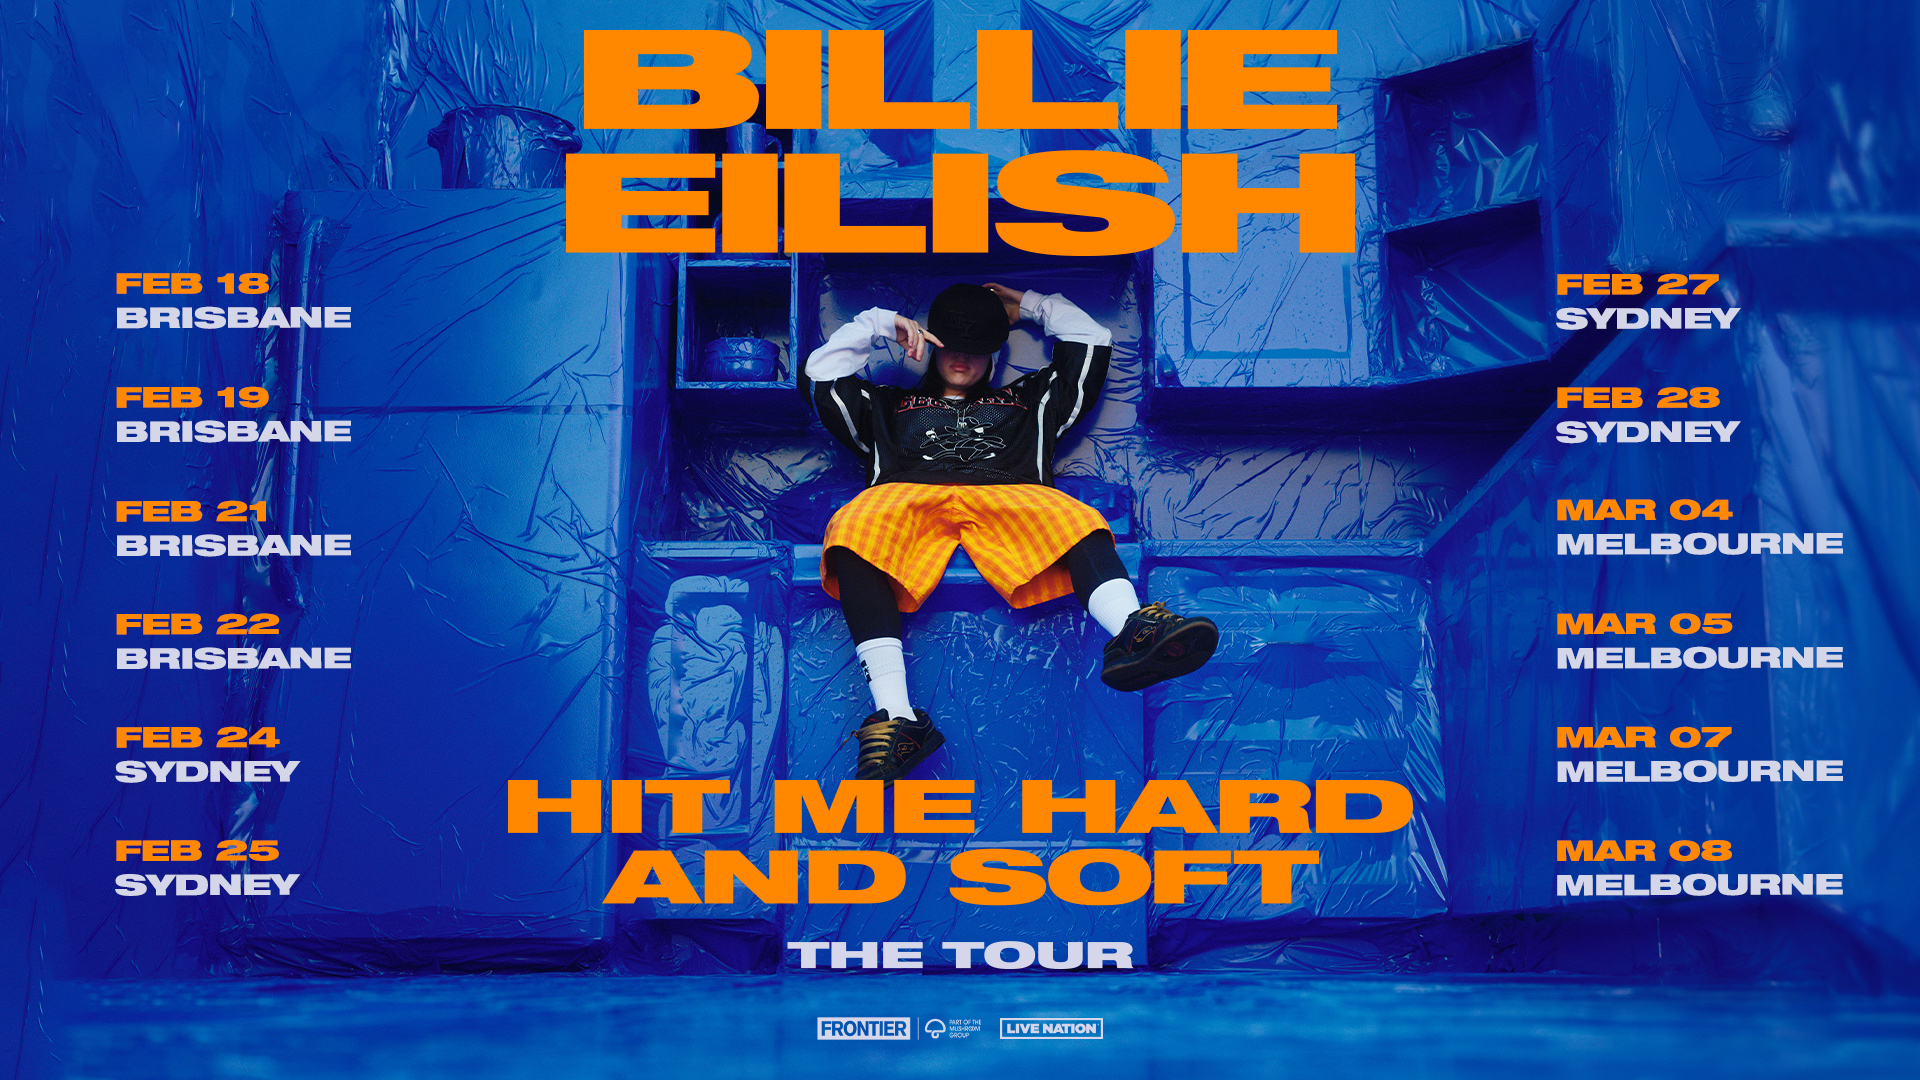 BILLIE EILISH ANNOUNCES ‘HIT ME HARD AND SOFT’ TOUR AUS DATES IN